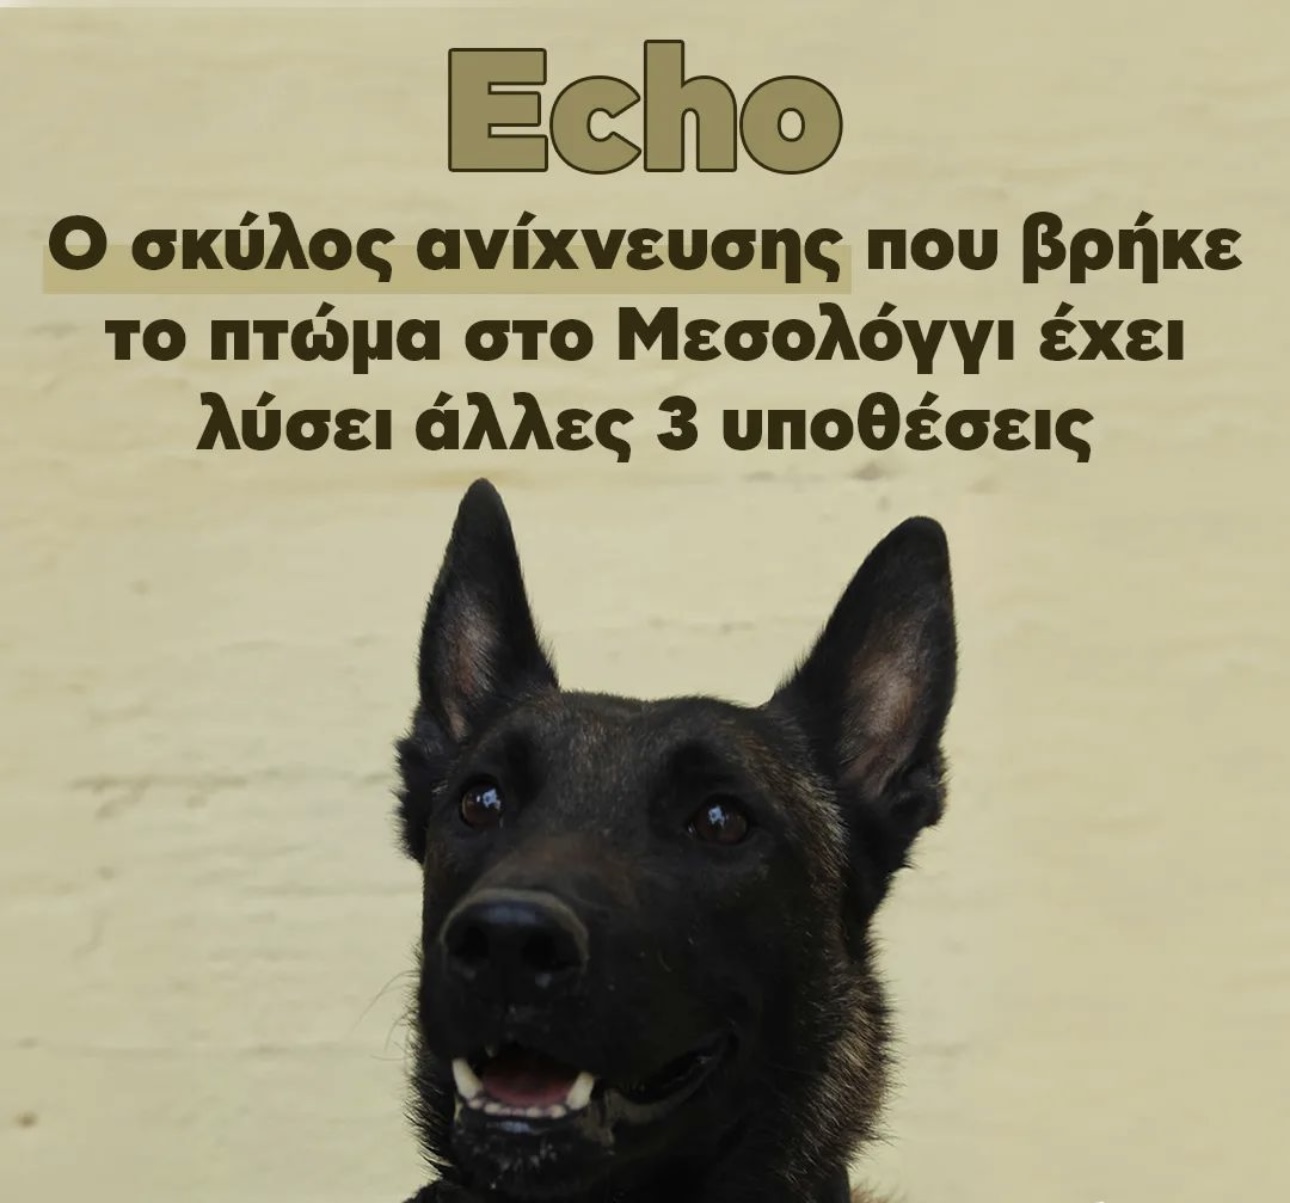 Στην Ηλεία ο Echo, ο σκύλος που βρήκε τον Μπάμπη